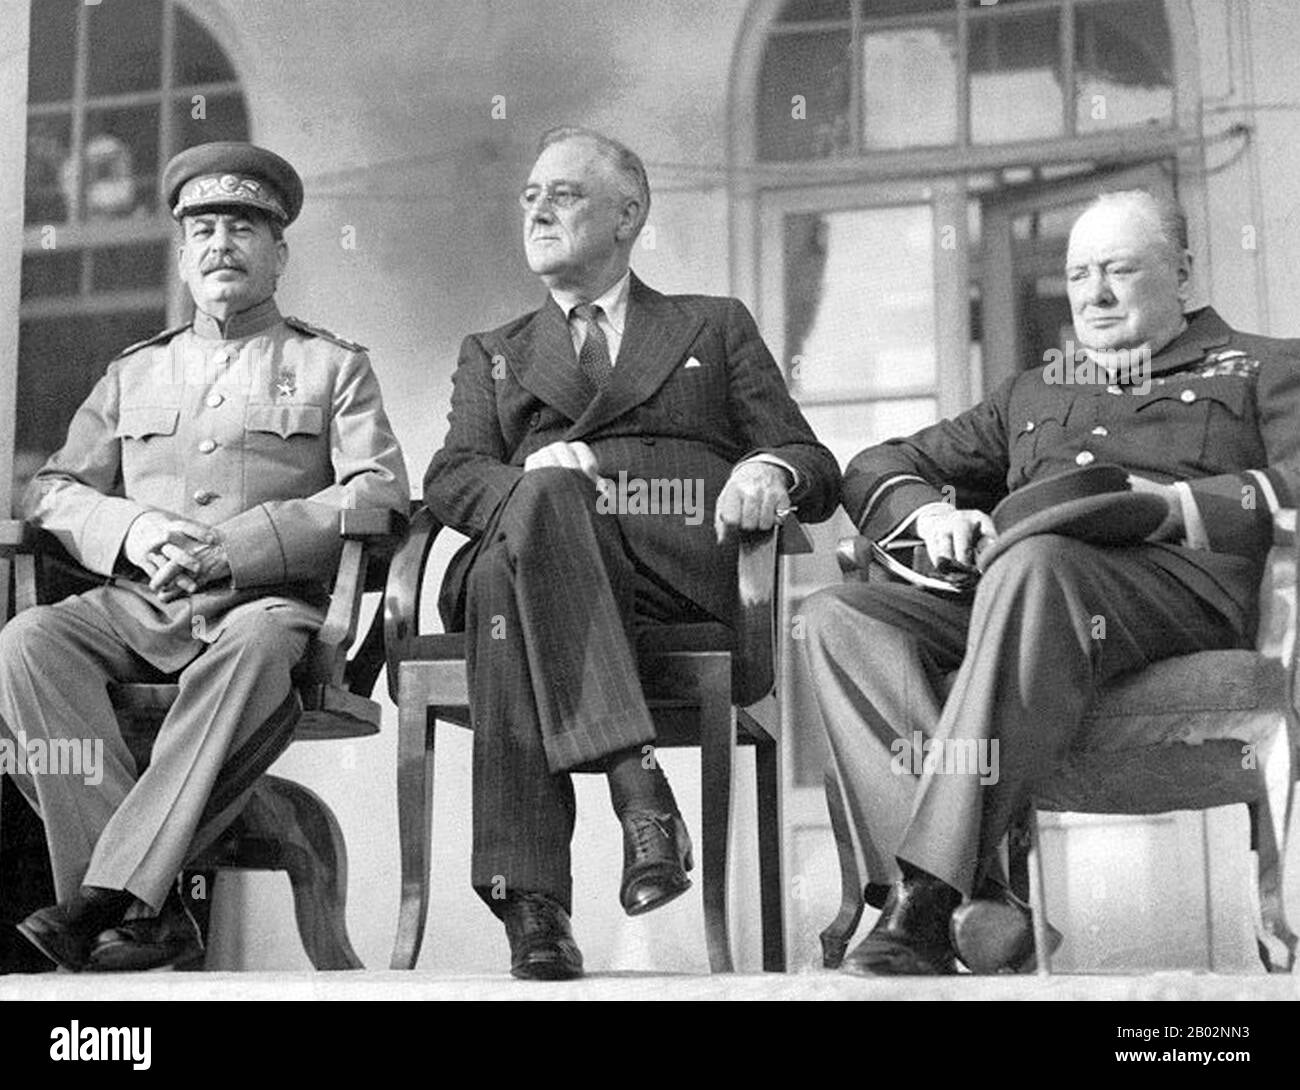 La Conférence de Téhéran a été une réunion stratégique tenue entre Joseph Staline, Franklin D. Roosevelt et Winston Churchill du 28 novembre au 1er décembre 1943. Il s'est tenu à l'ambassade soviétique à Téhéran, en Iran, et a été le premier des conférences de la seconde Guerre mondiale qui ont eu lieu entre tous les « trois grands » dirigeants alliés (l'Union soviétique, les États-Unis et le Royaume-Uni). Il a suivi de près la Conférence du Caire, qui a eu lieu les 22 et 26 novembre 1943, et a précédé les conférences de Yalta et Potsdam de 1945. Bien que les trois dirigeants présents soient parvenus à des objectifs différents, le principal outc Banque D'Images